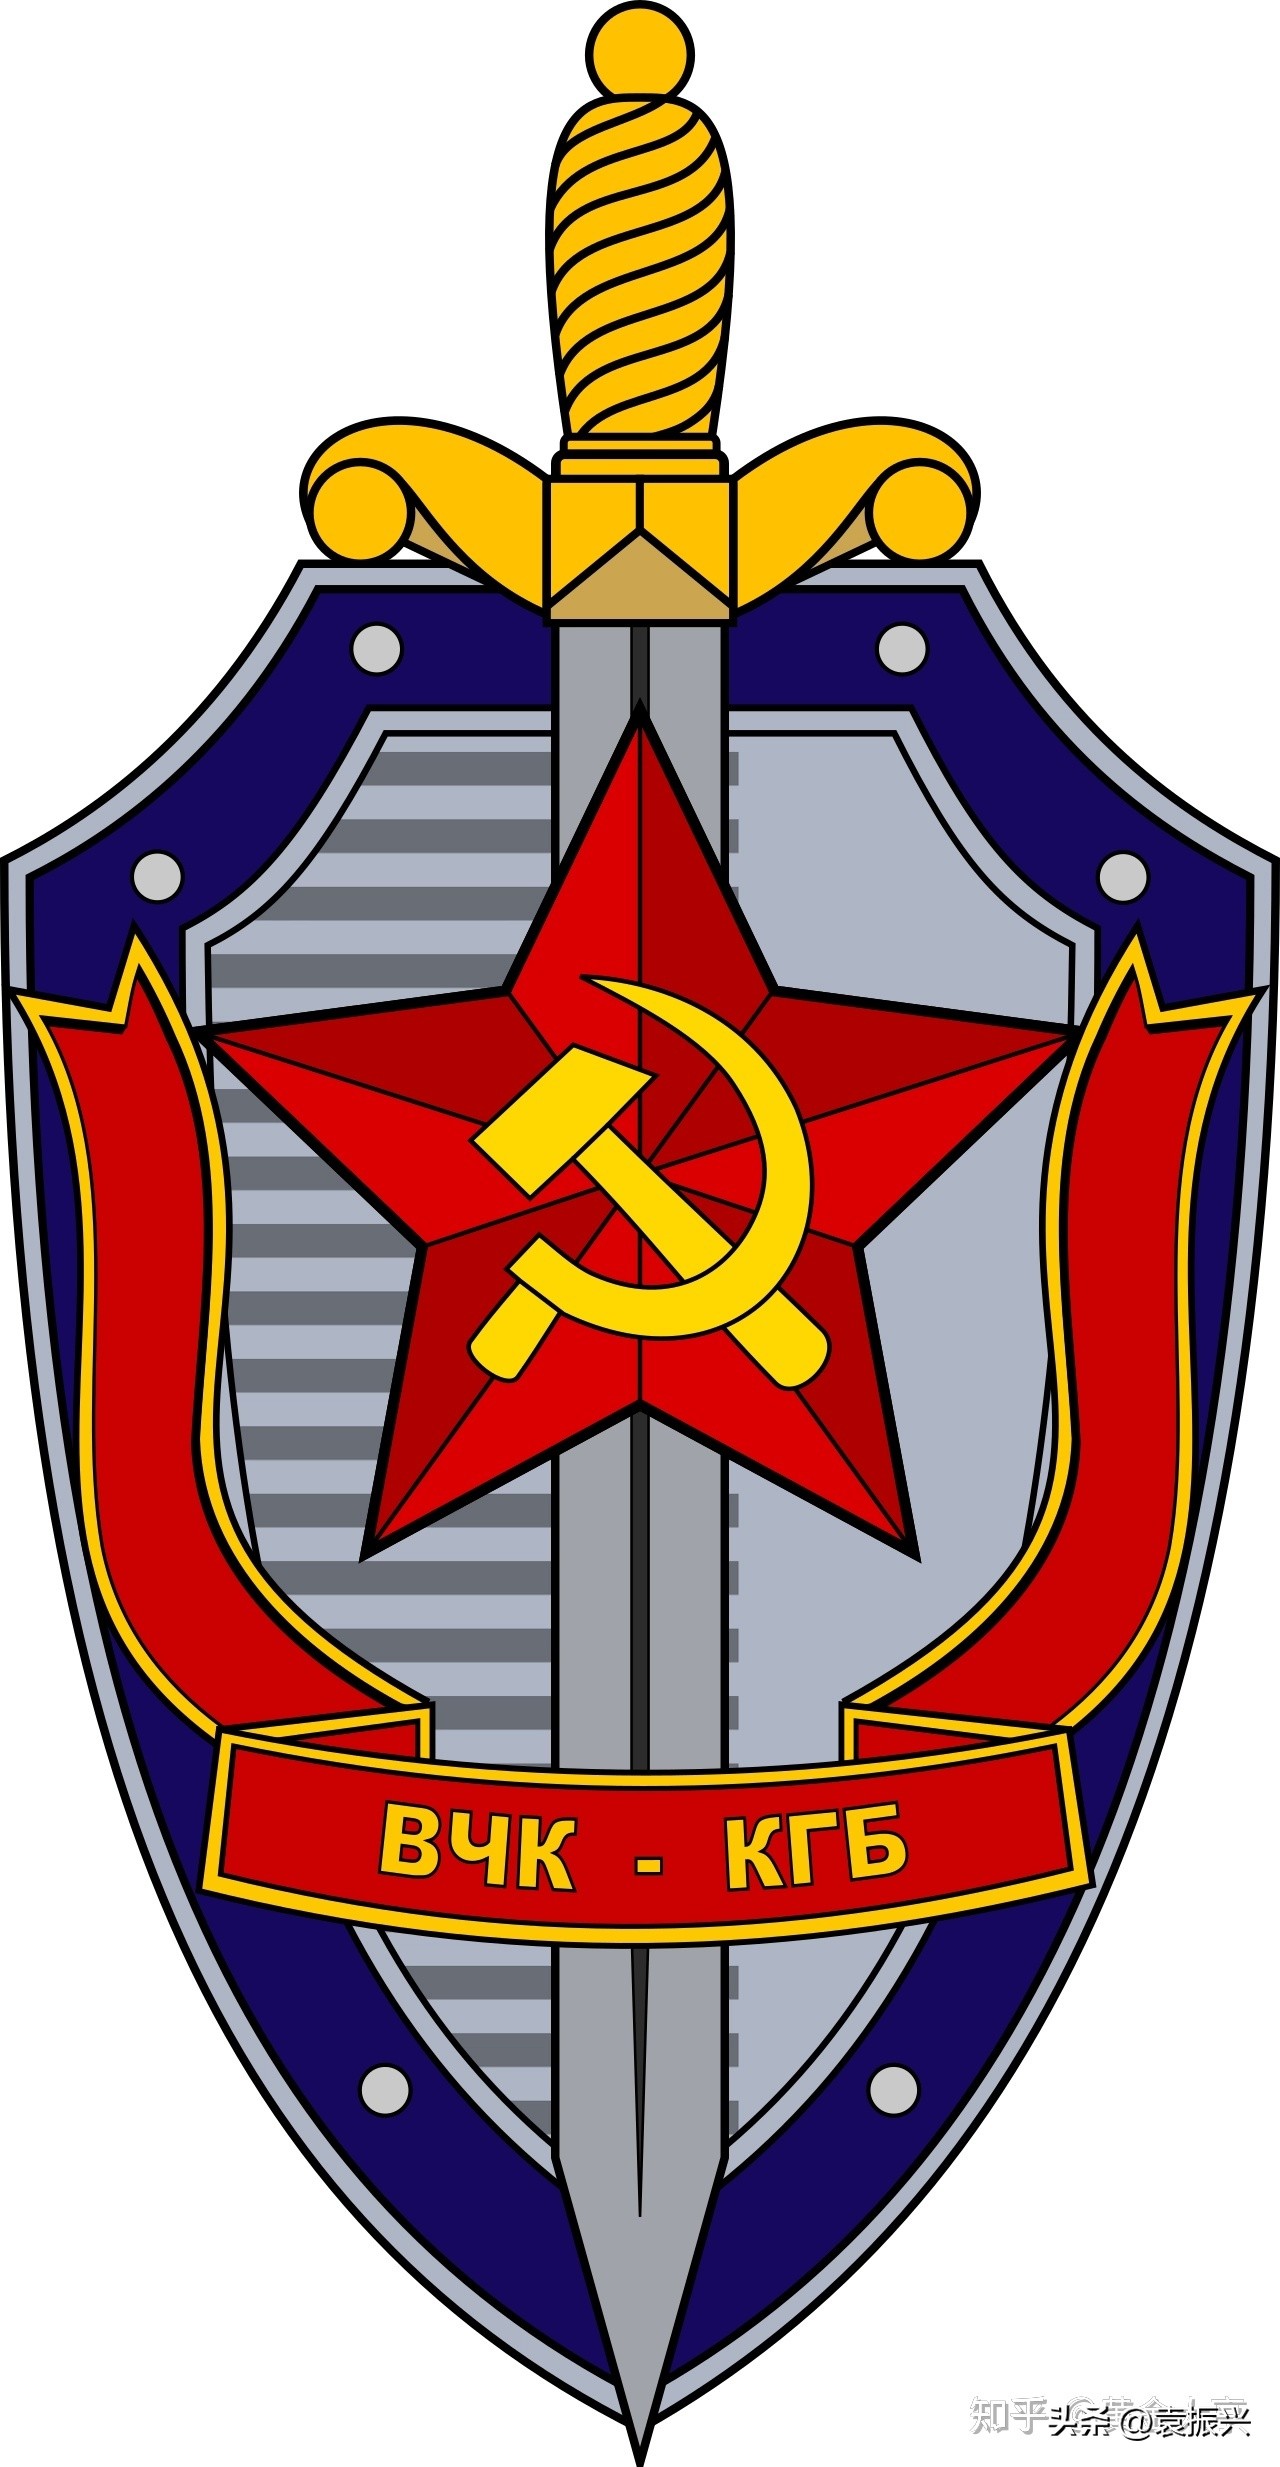 苏联的克格勃如此强大，为何却是臭名昭著？